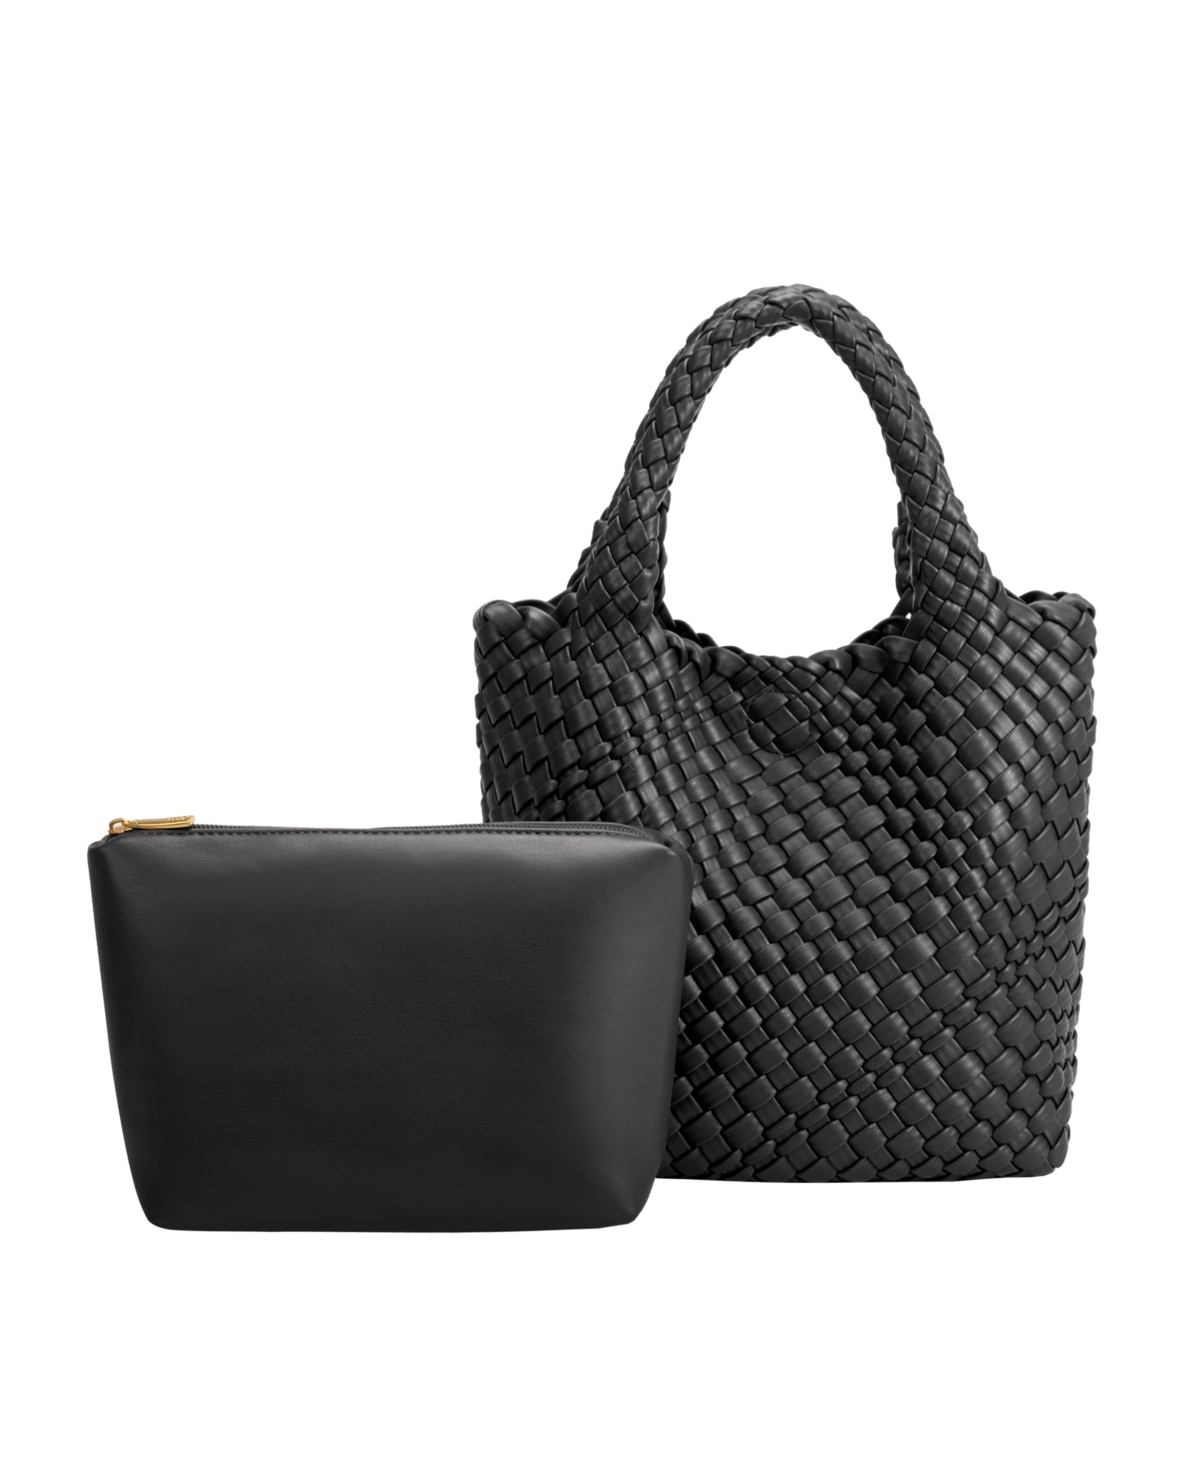 Melie Bianco Women's Eloise Tote Bag In Black